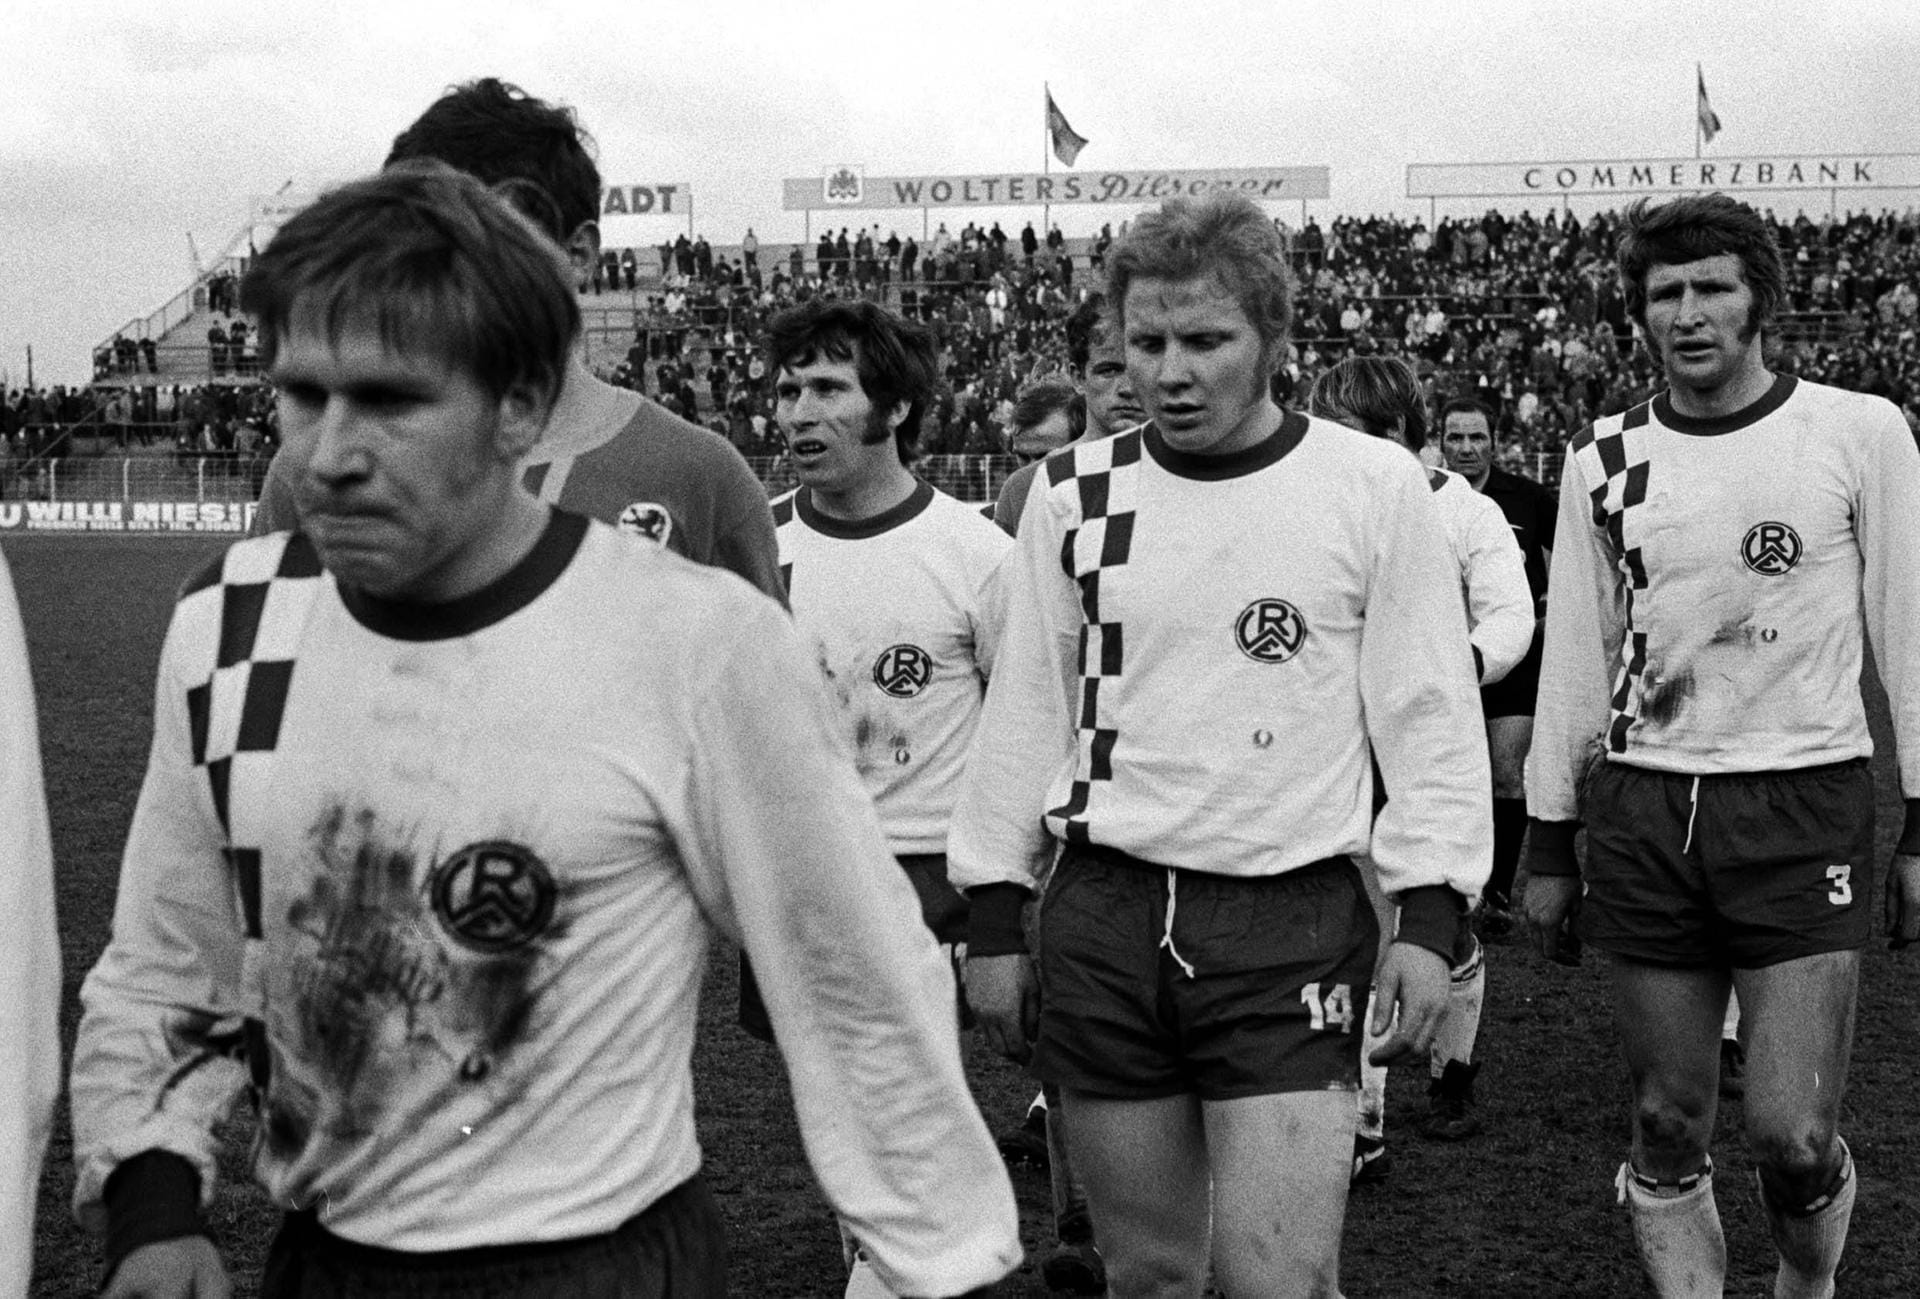 ... Schritte im Profi-Fußball machte der gebürtige Essener (2. v. r.) beim Kult-Klub Rot-Weiss Essen. Dort spielte er bis 1971, ehe Burgsmüller zu...